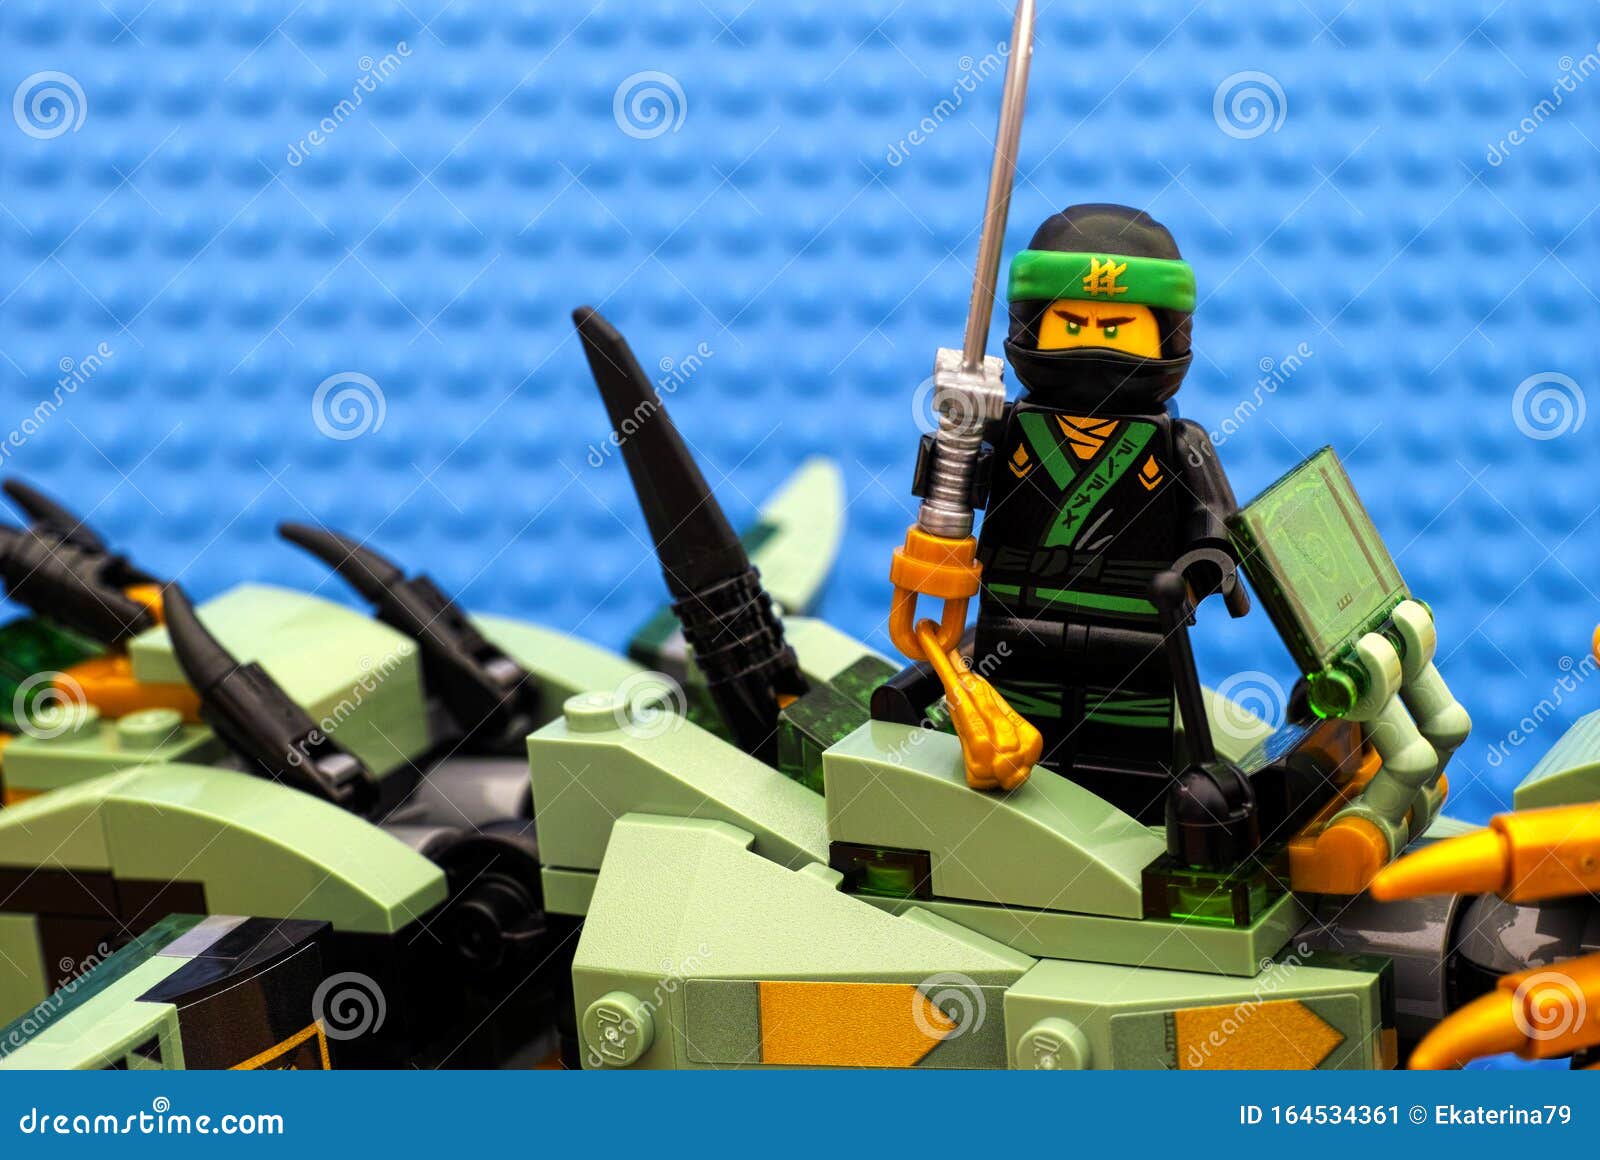 Lego Ninjago Movie Groene Ninja Die Staat Op Green Ninja Mech Dragon Redactionele Foto - Image of groepswerk, groen: 164534361